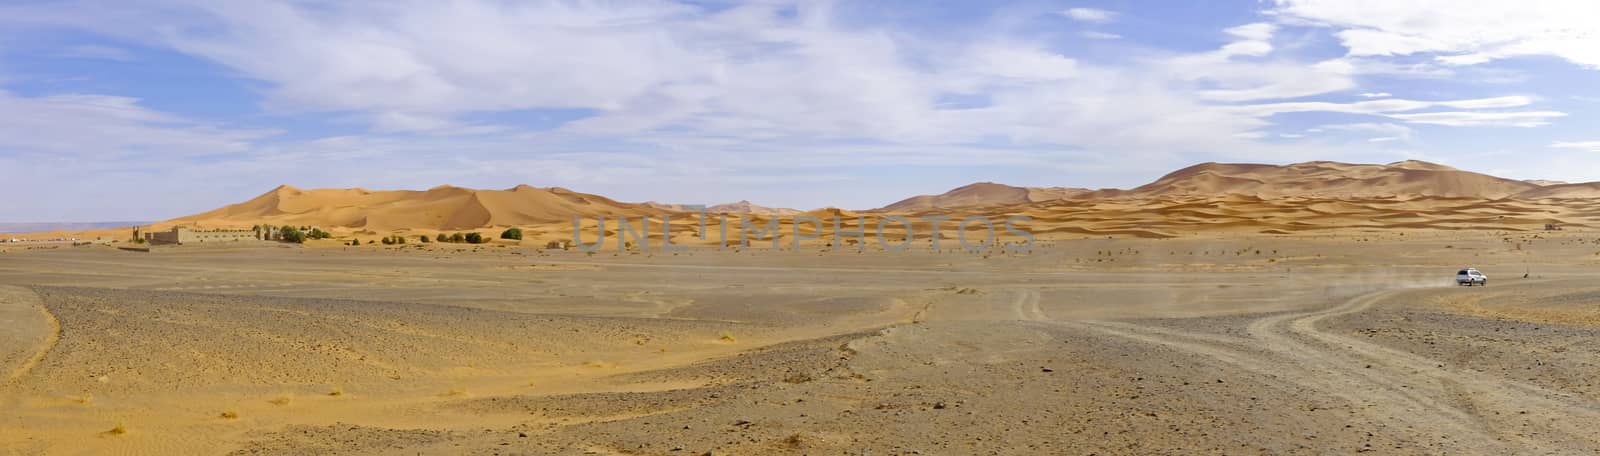 Panorama from the Erg Chebbi desert in Maroc Africa